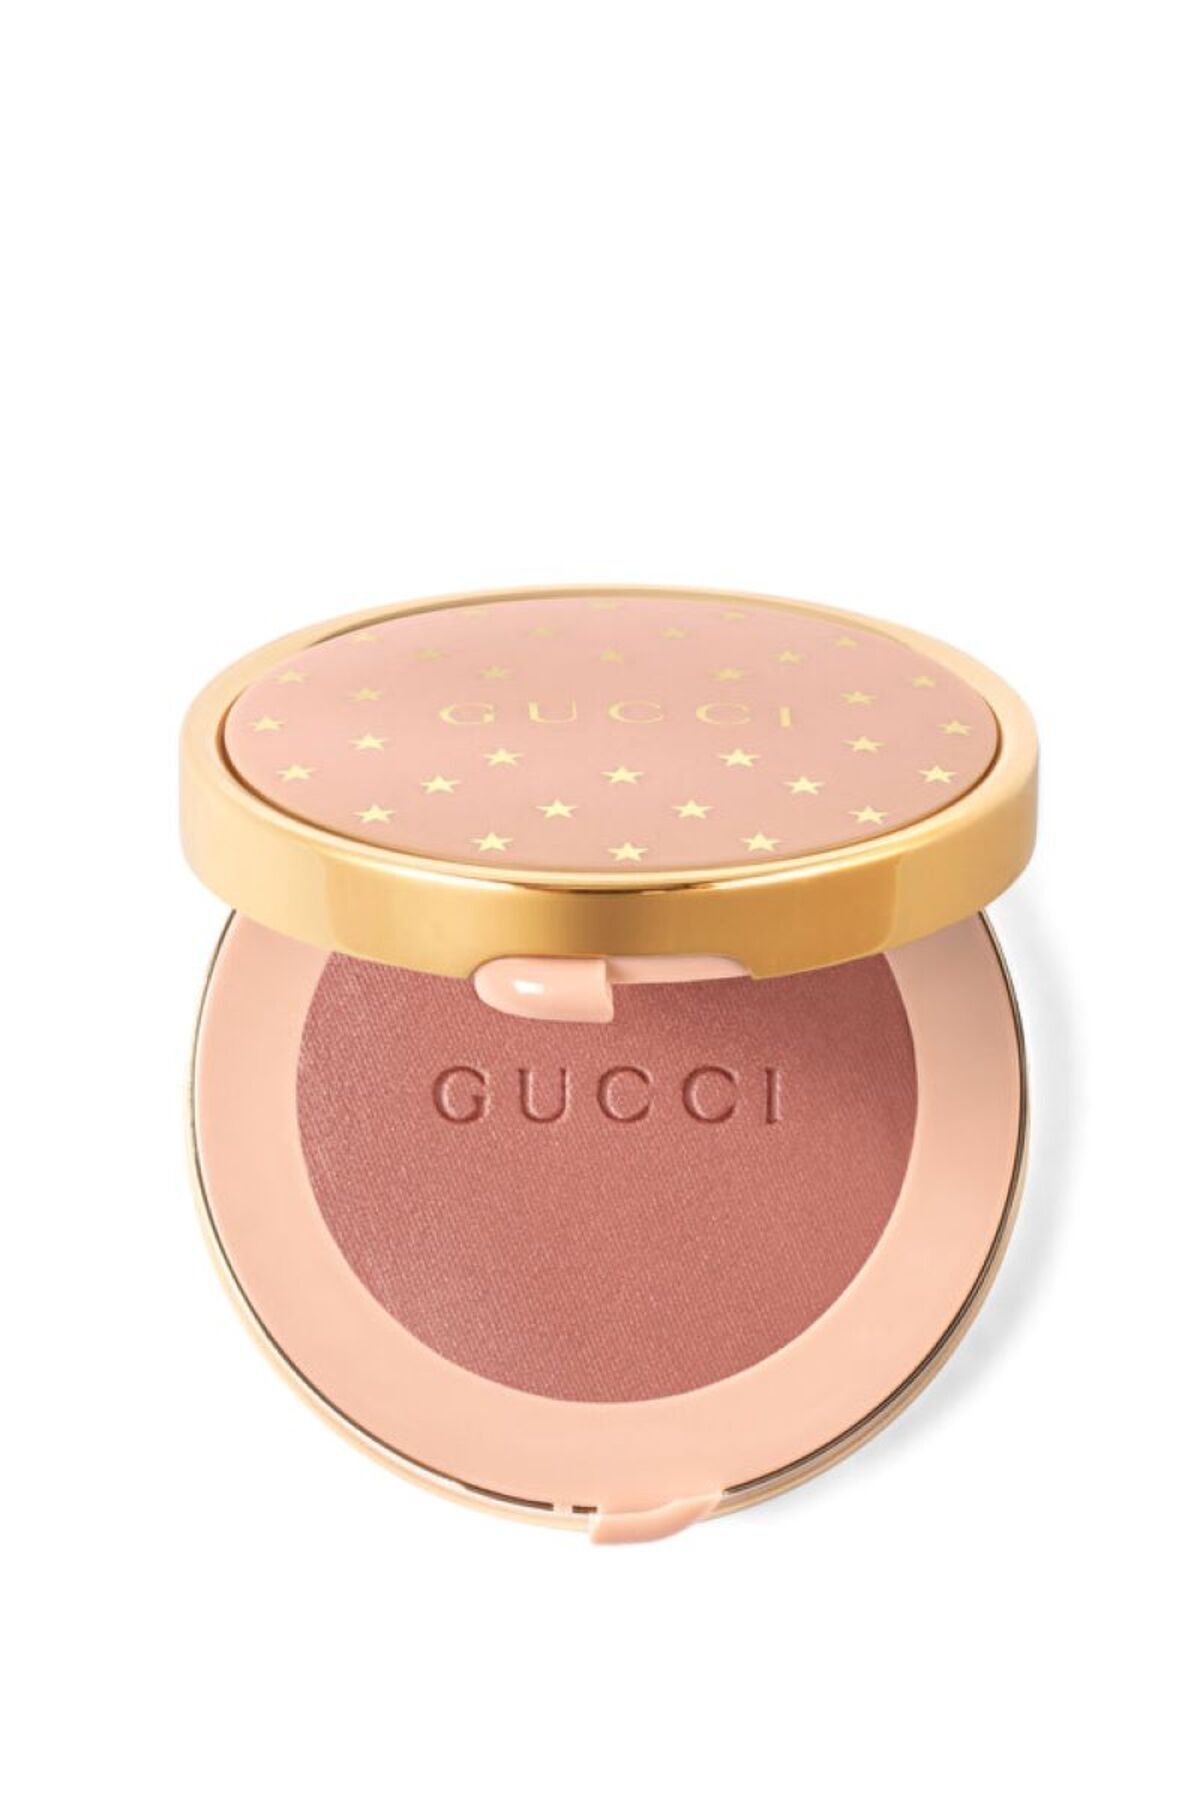 Gucci Beauty Blush Pürüzsüz, Eğlenceli ve Çok amaçlı, Yanaklara ve Gözlere Uygulanabilir 5,5 gr